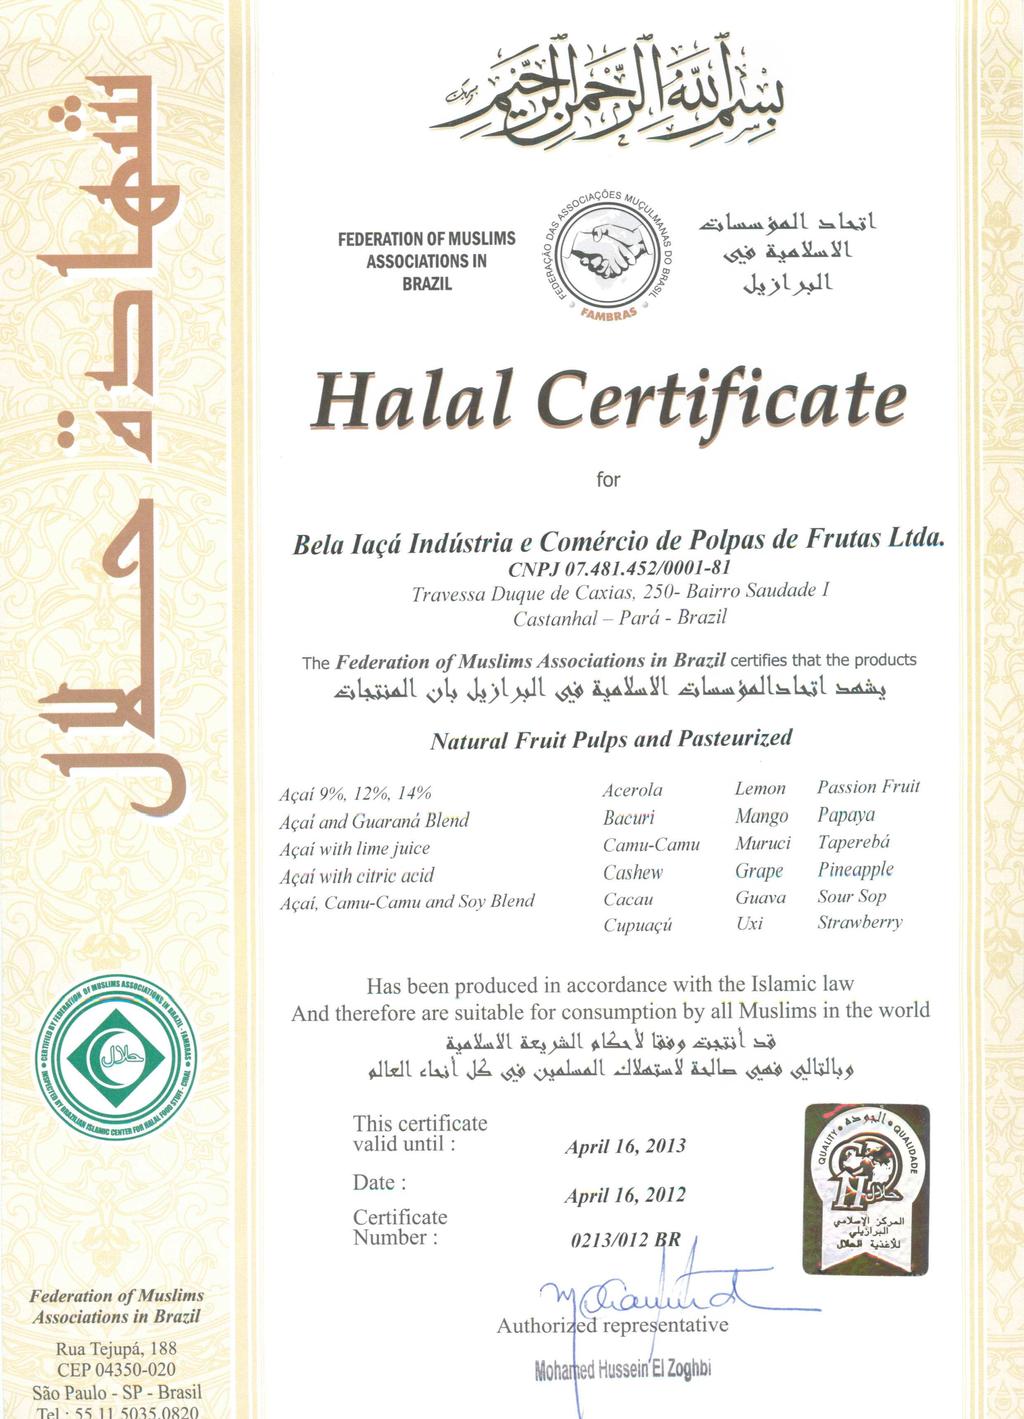 Última atualização: Página 3 19/09/2013 Certificação Halal. Fonte: belaiaca.